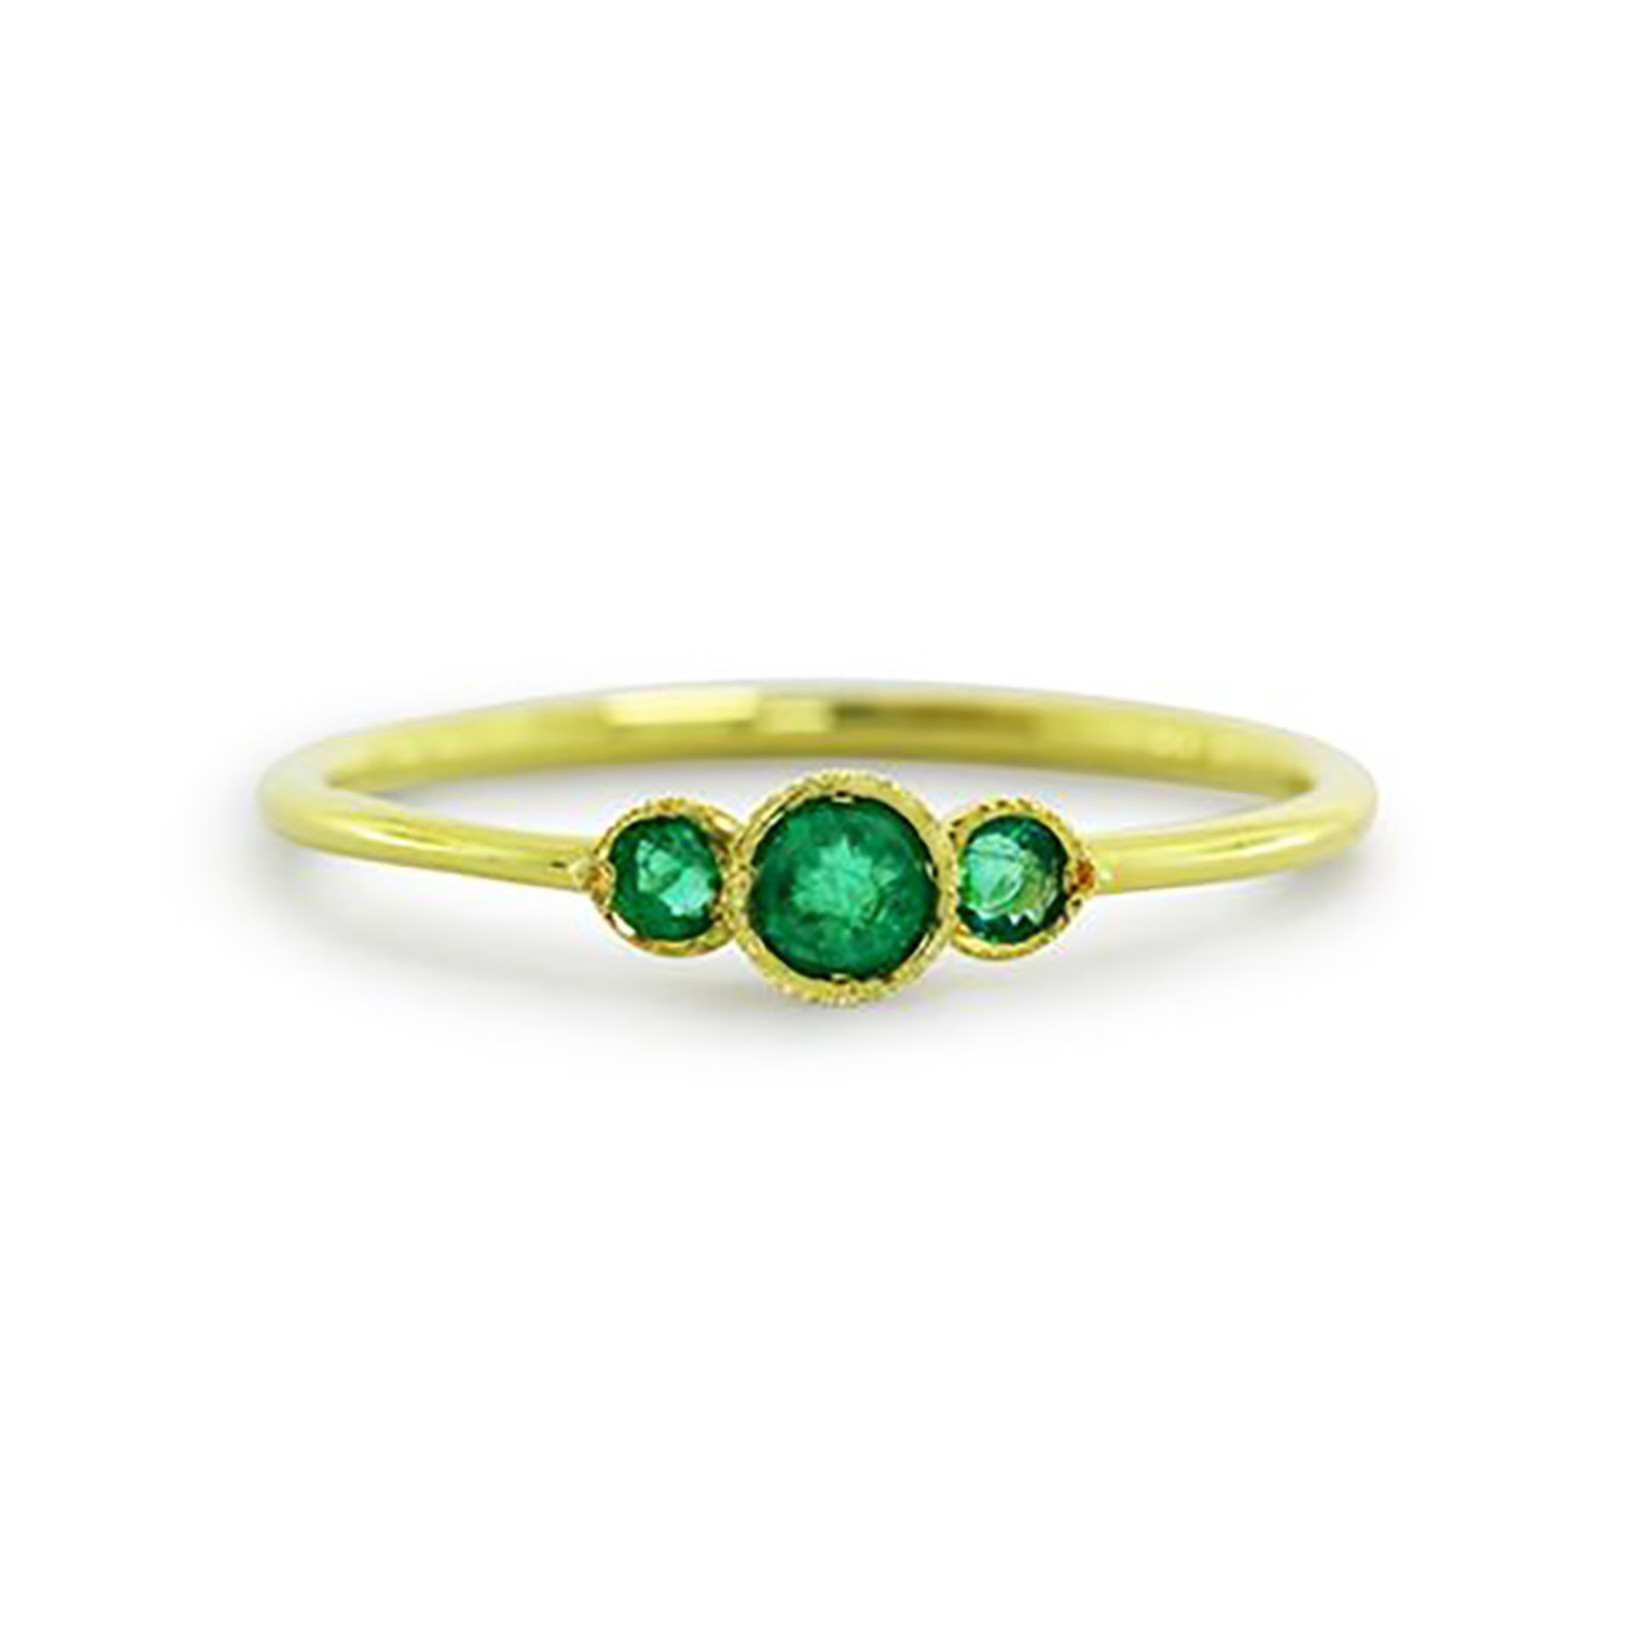 ILA Melika Emerald Ring - Size 7